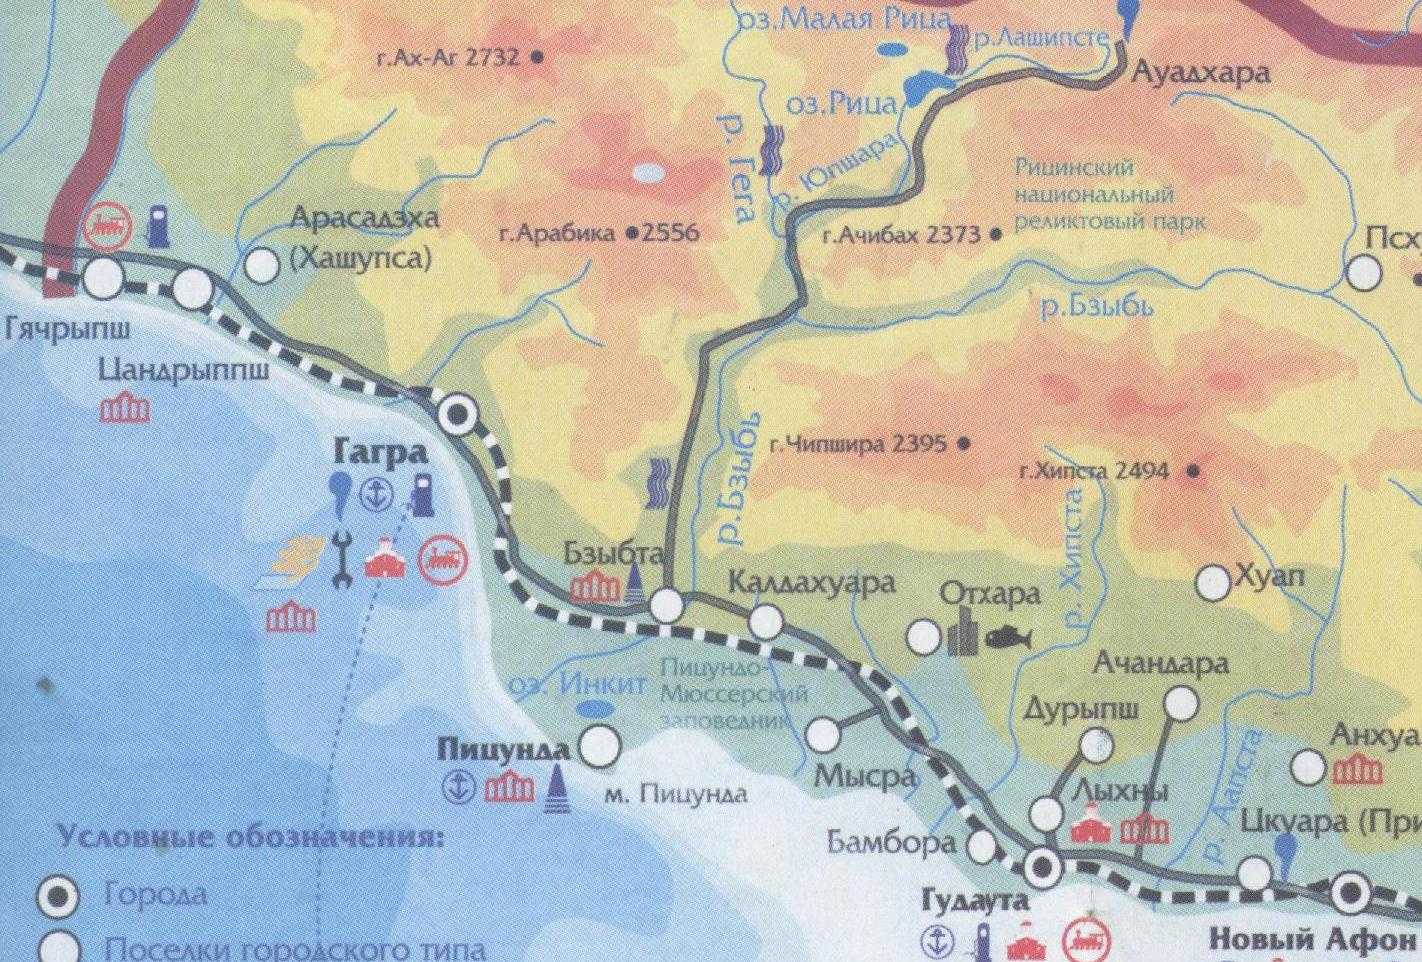 Что такое абхазия и где она находится. Река Бзыбь Абхазия на карте Гагры. Карта Абхазии Рица озеро карта. Оз Рица Абхазия на карте. Карта Абхазии подробная с городами и поселками озеро Рица.